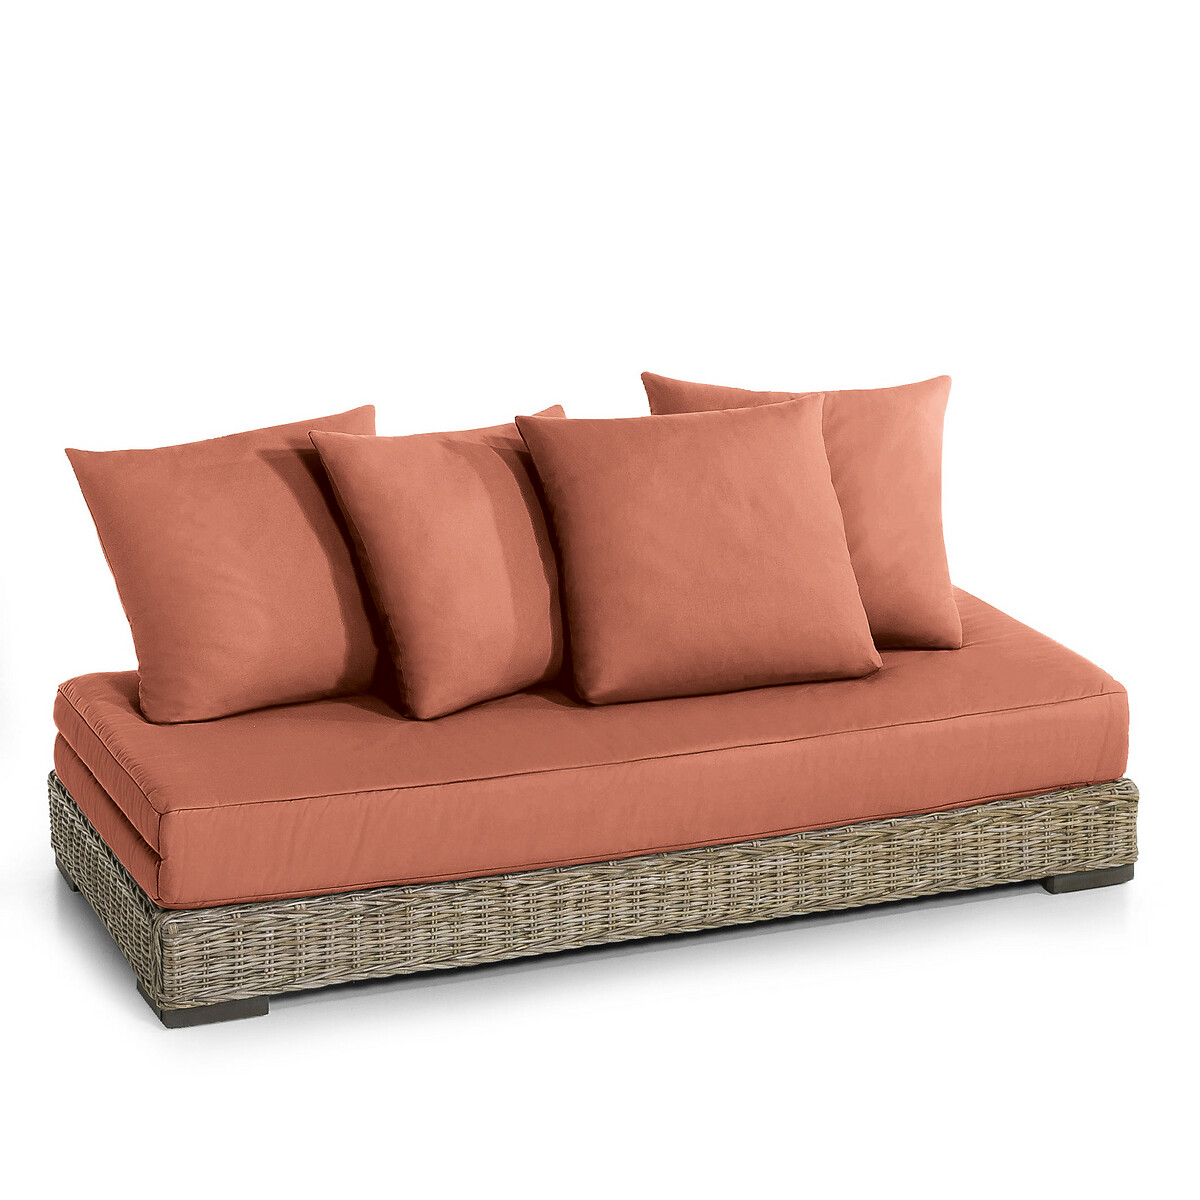 Матрас LaRedoute И подушки для дивана Giada 80 x 190 см каштановый, размер 80 x 190 см - фото 3